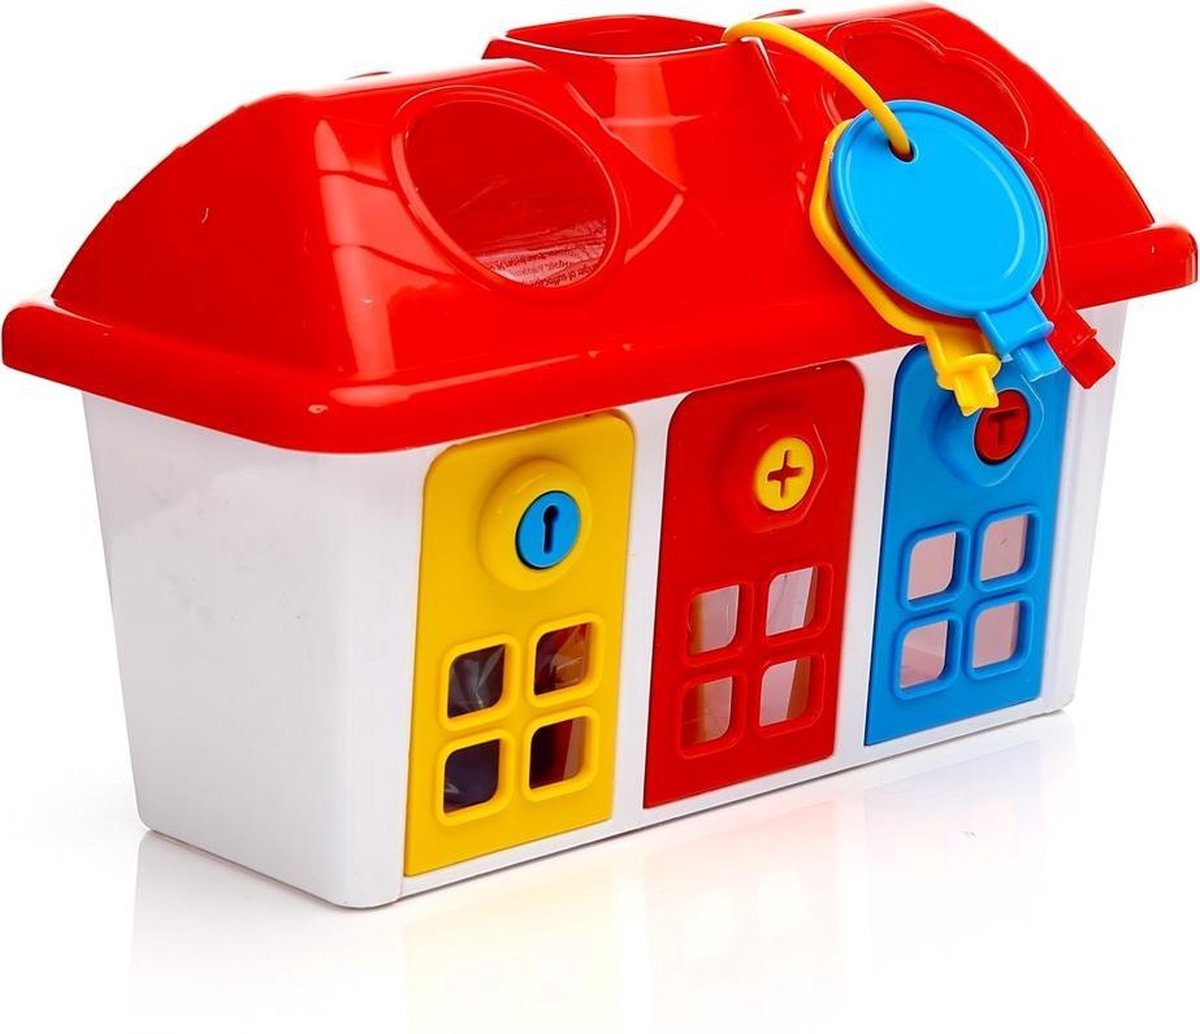 Vormenstoof - Huis - Blokkendoos - Sleutels - speelgoed 1 jaar | bol.com